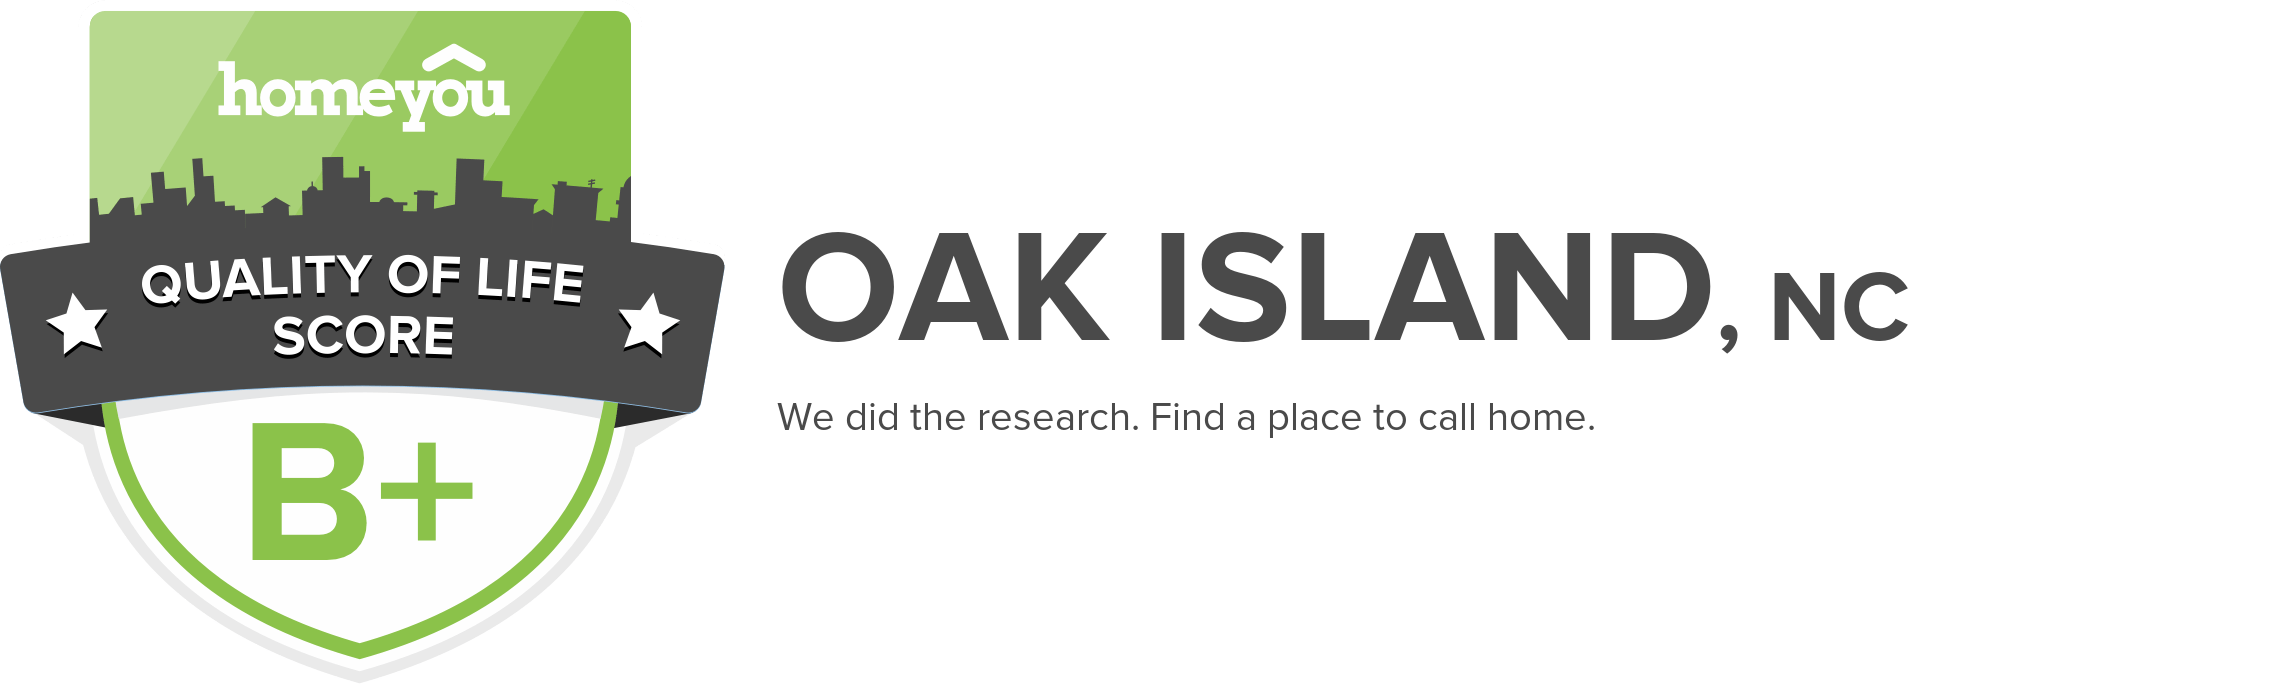 Oak Island, NC